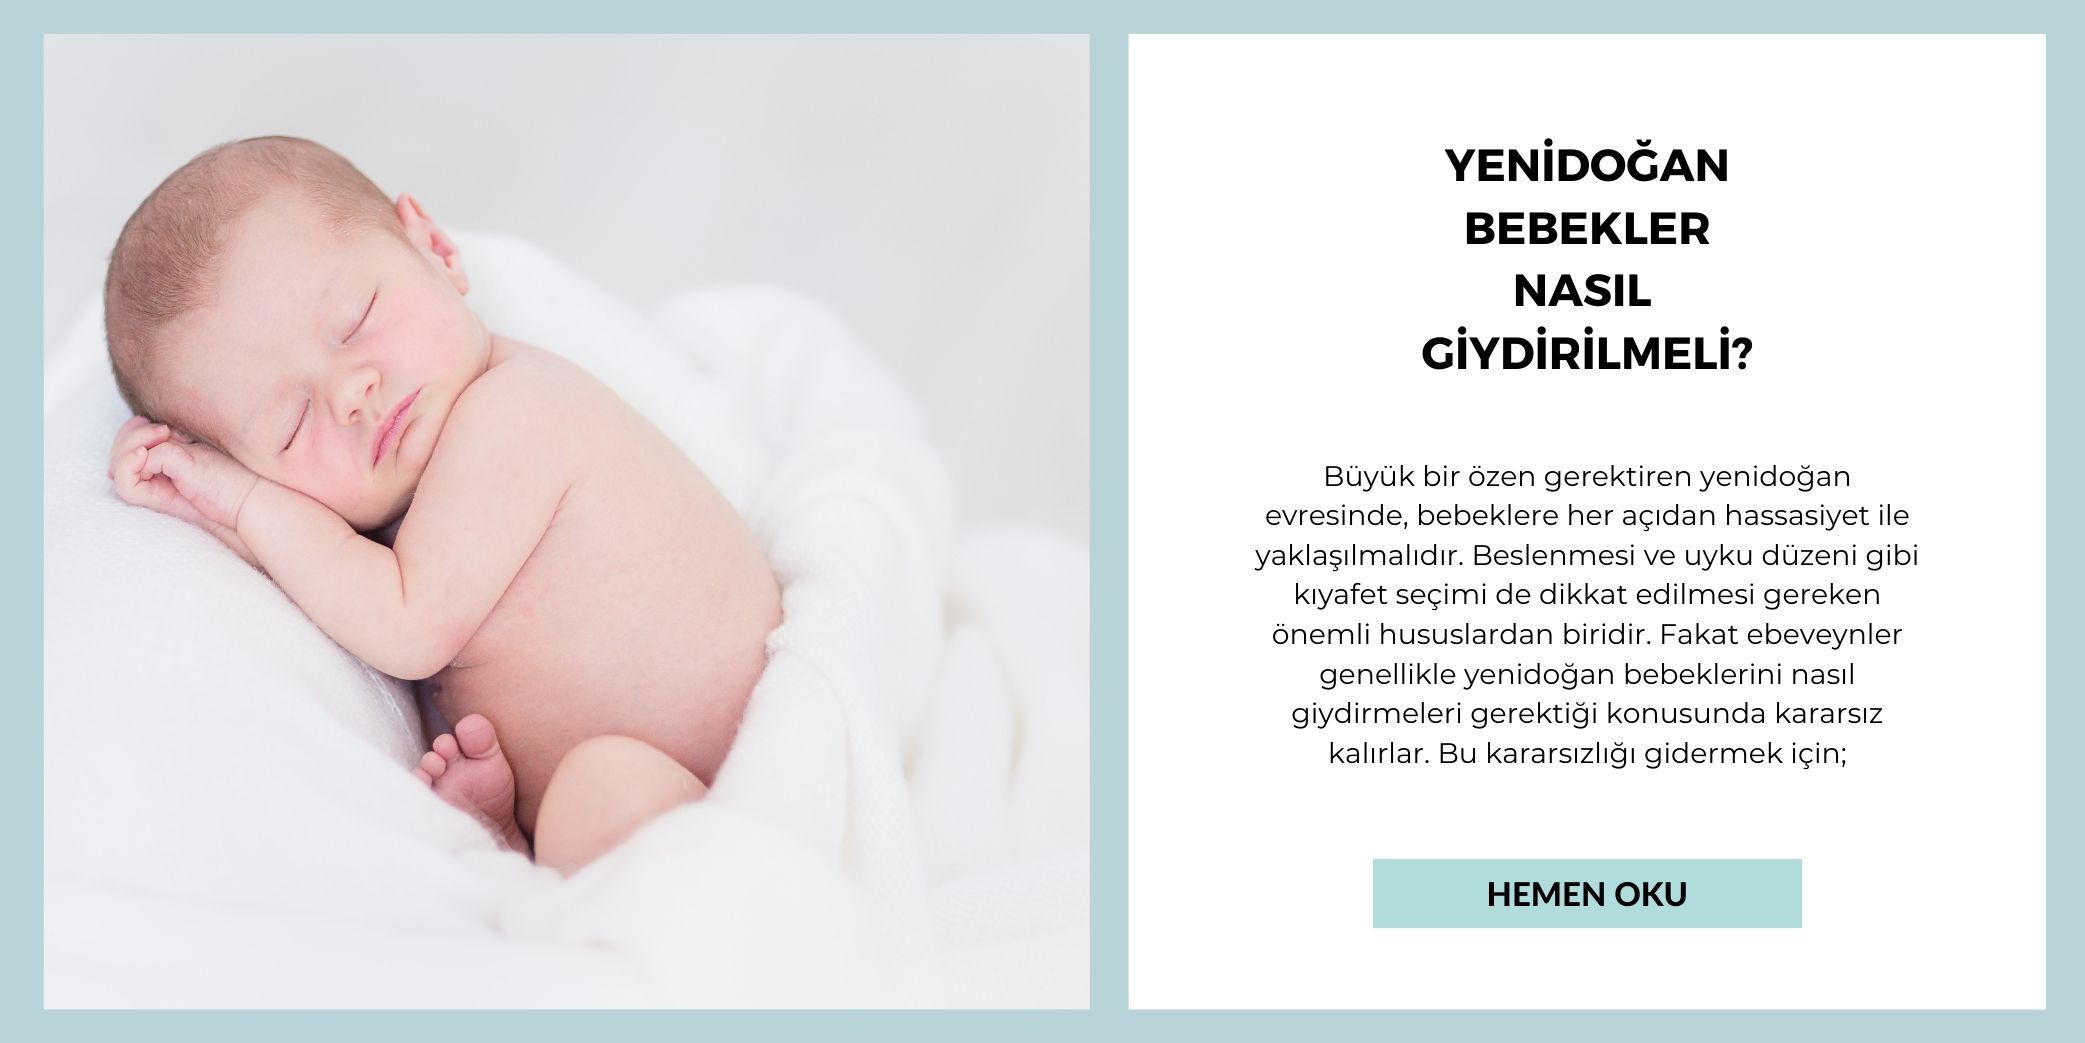 Yenidoğan Bebek Nasıl Giydirilmeli?